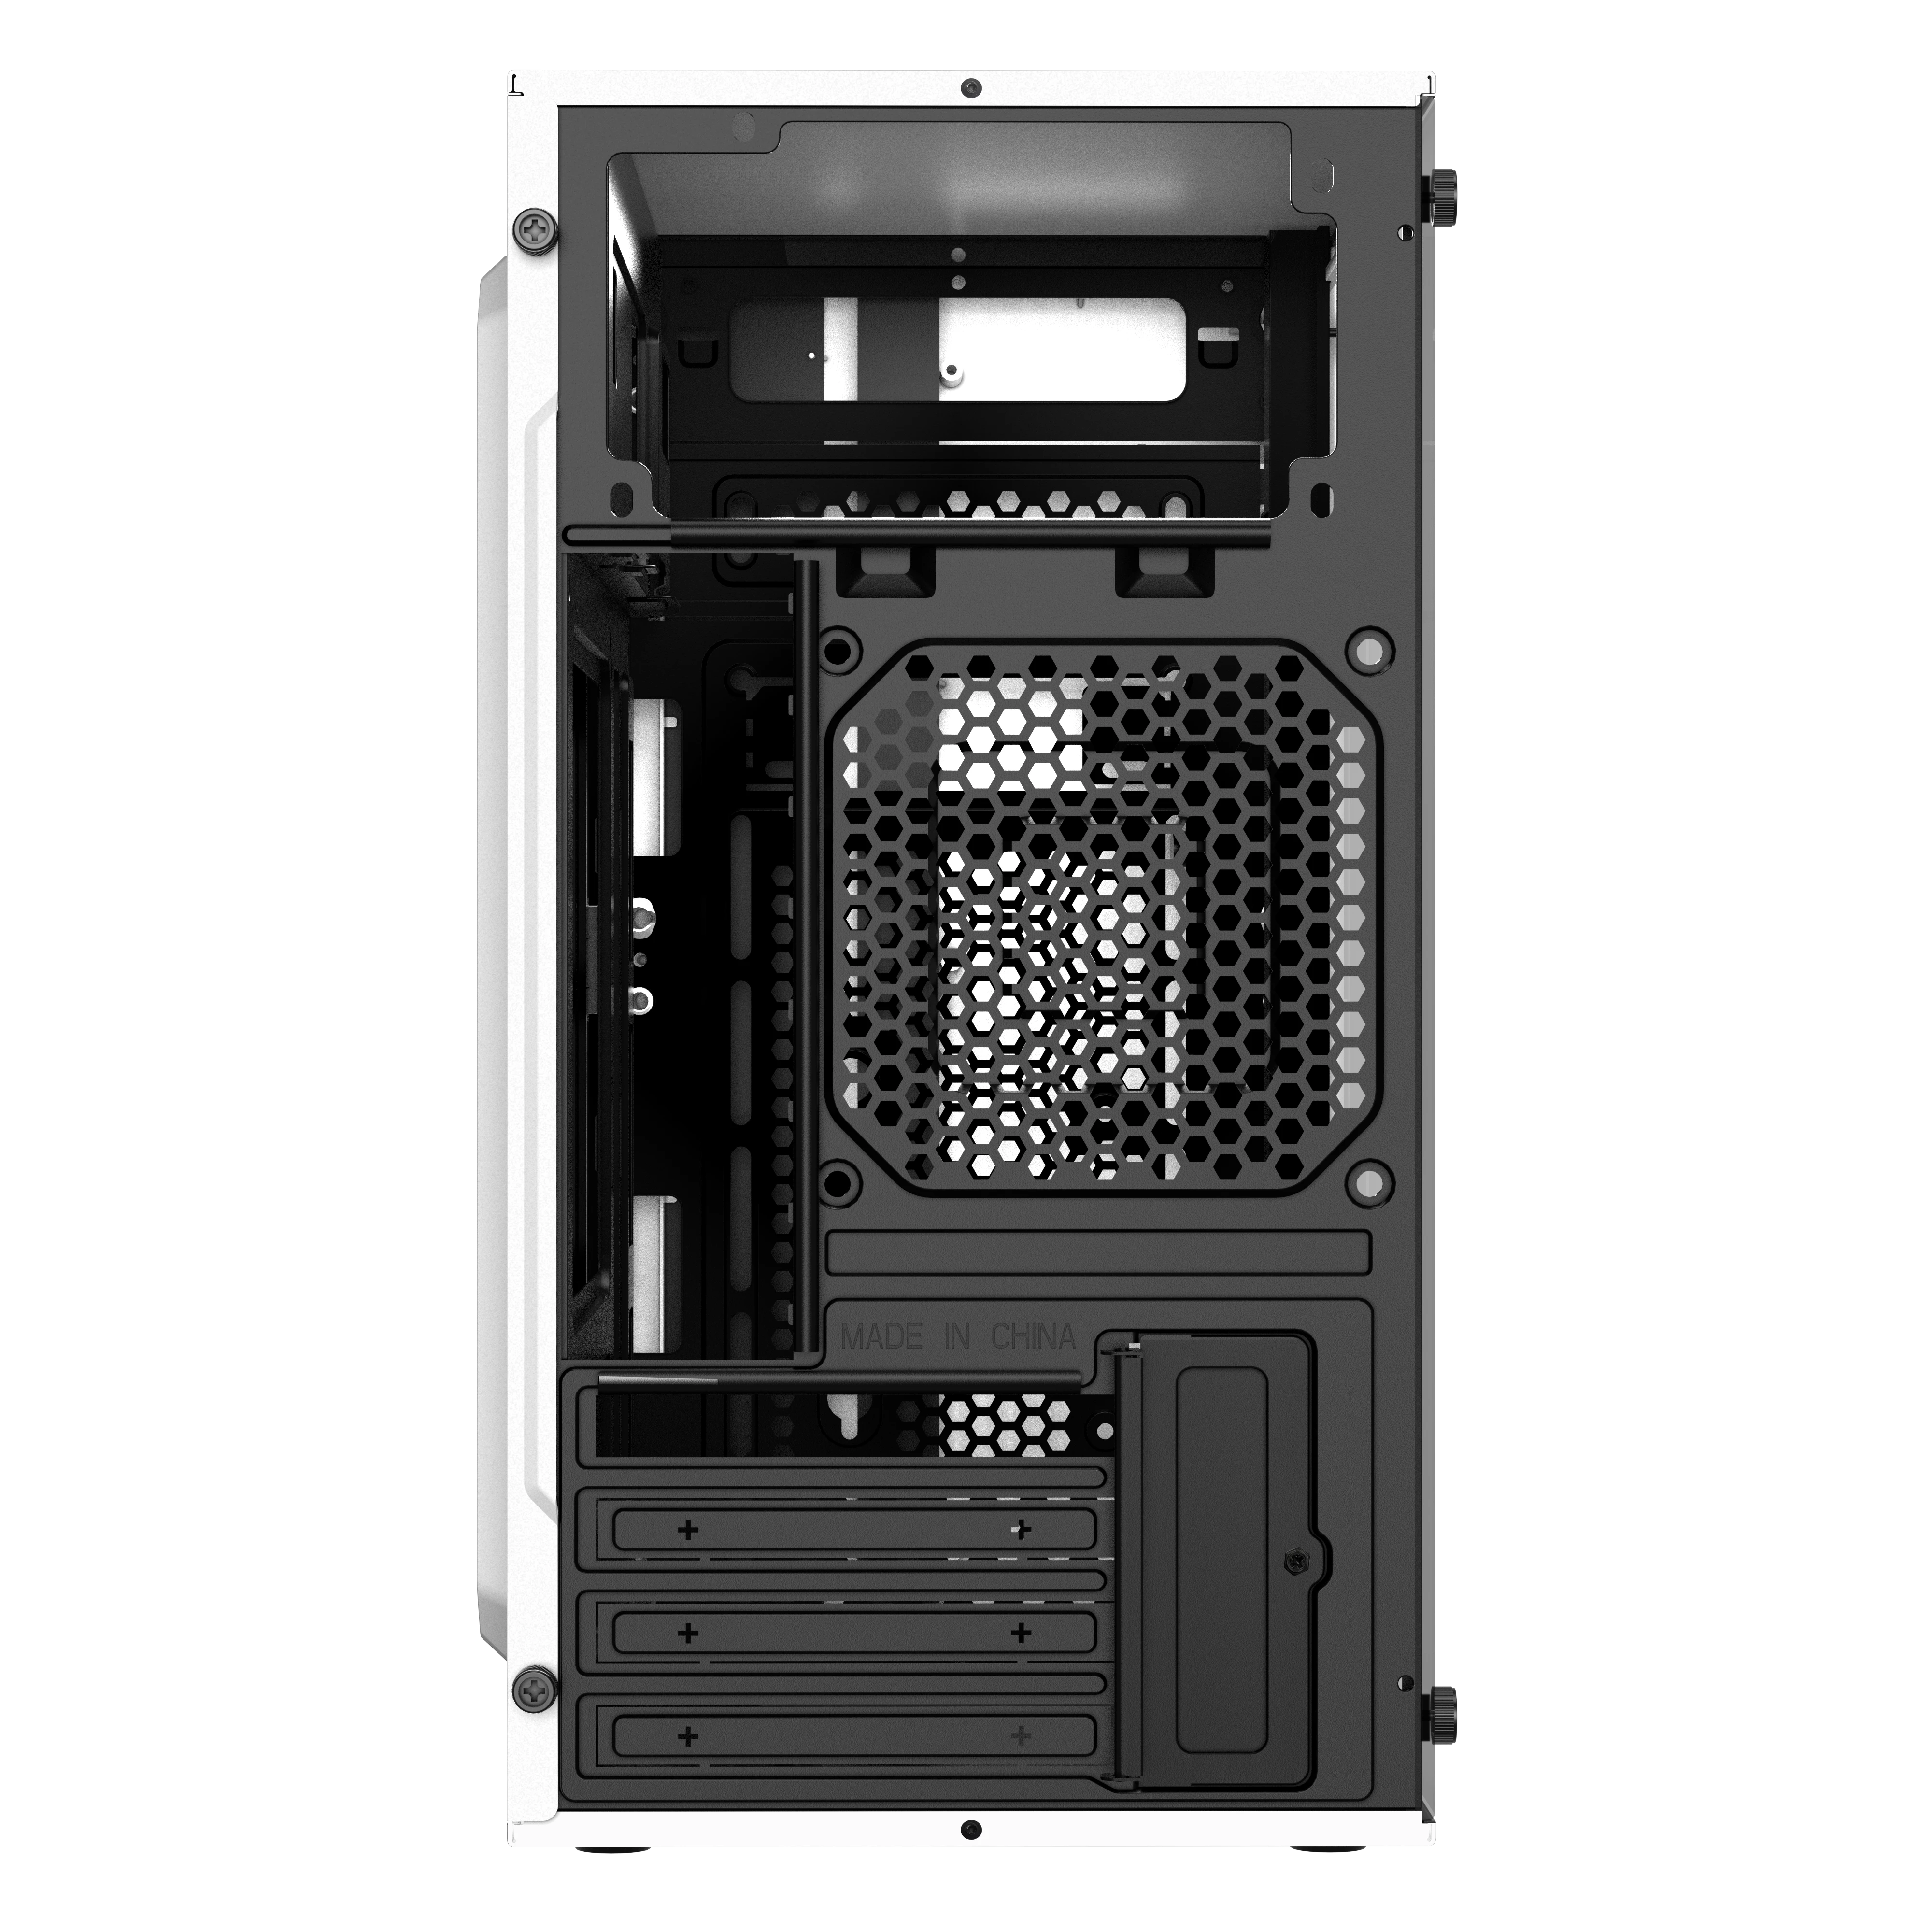 Gabinete Mini Torre | Fusion II GI440 | con Fuente de Poder ATX Plus 500w